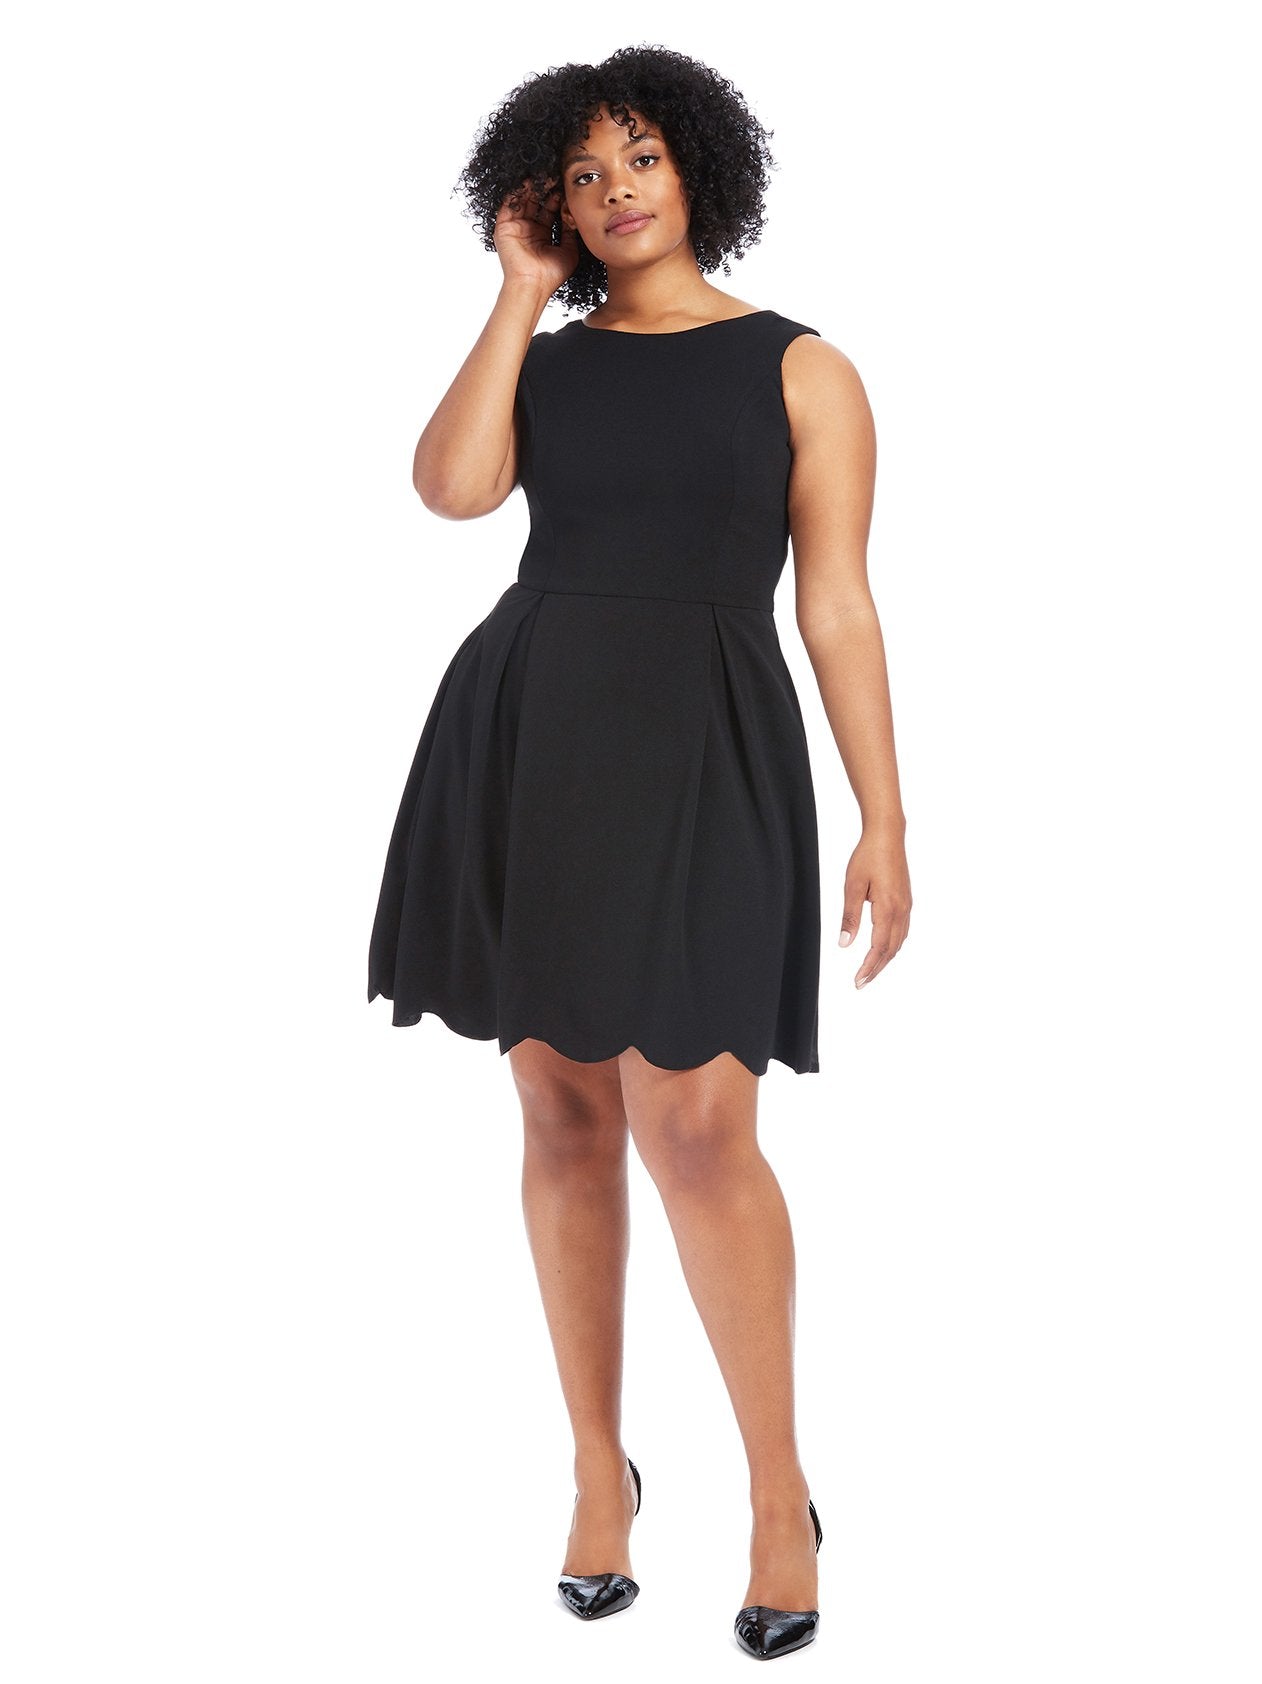 Scallop Hem Black Fit And Flare Dress | Single Dresses | Gwynnie